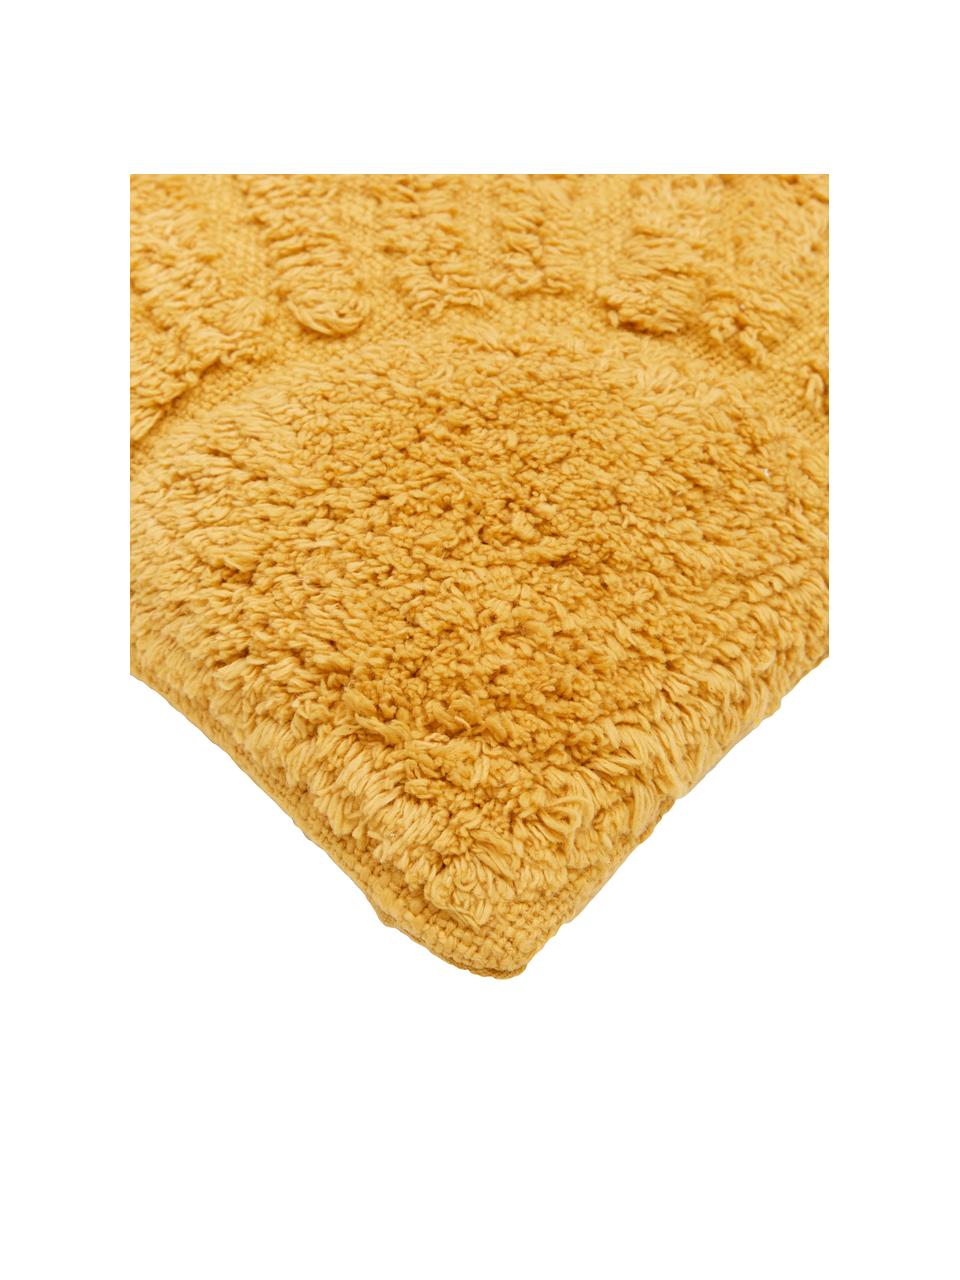 Katoenen kussenhoes Ilari met hoog-laag structuur, 100% katoen, Geel, B 45 x L 45 cm